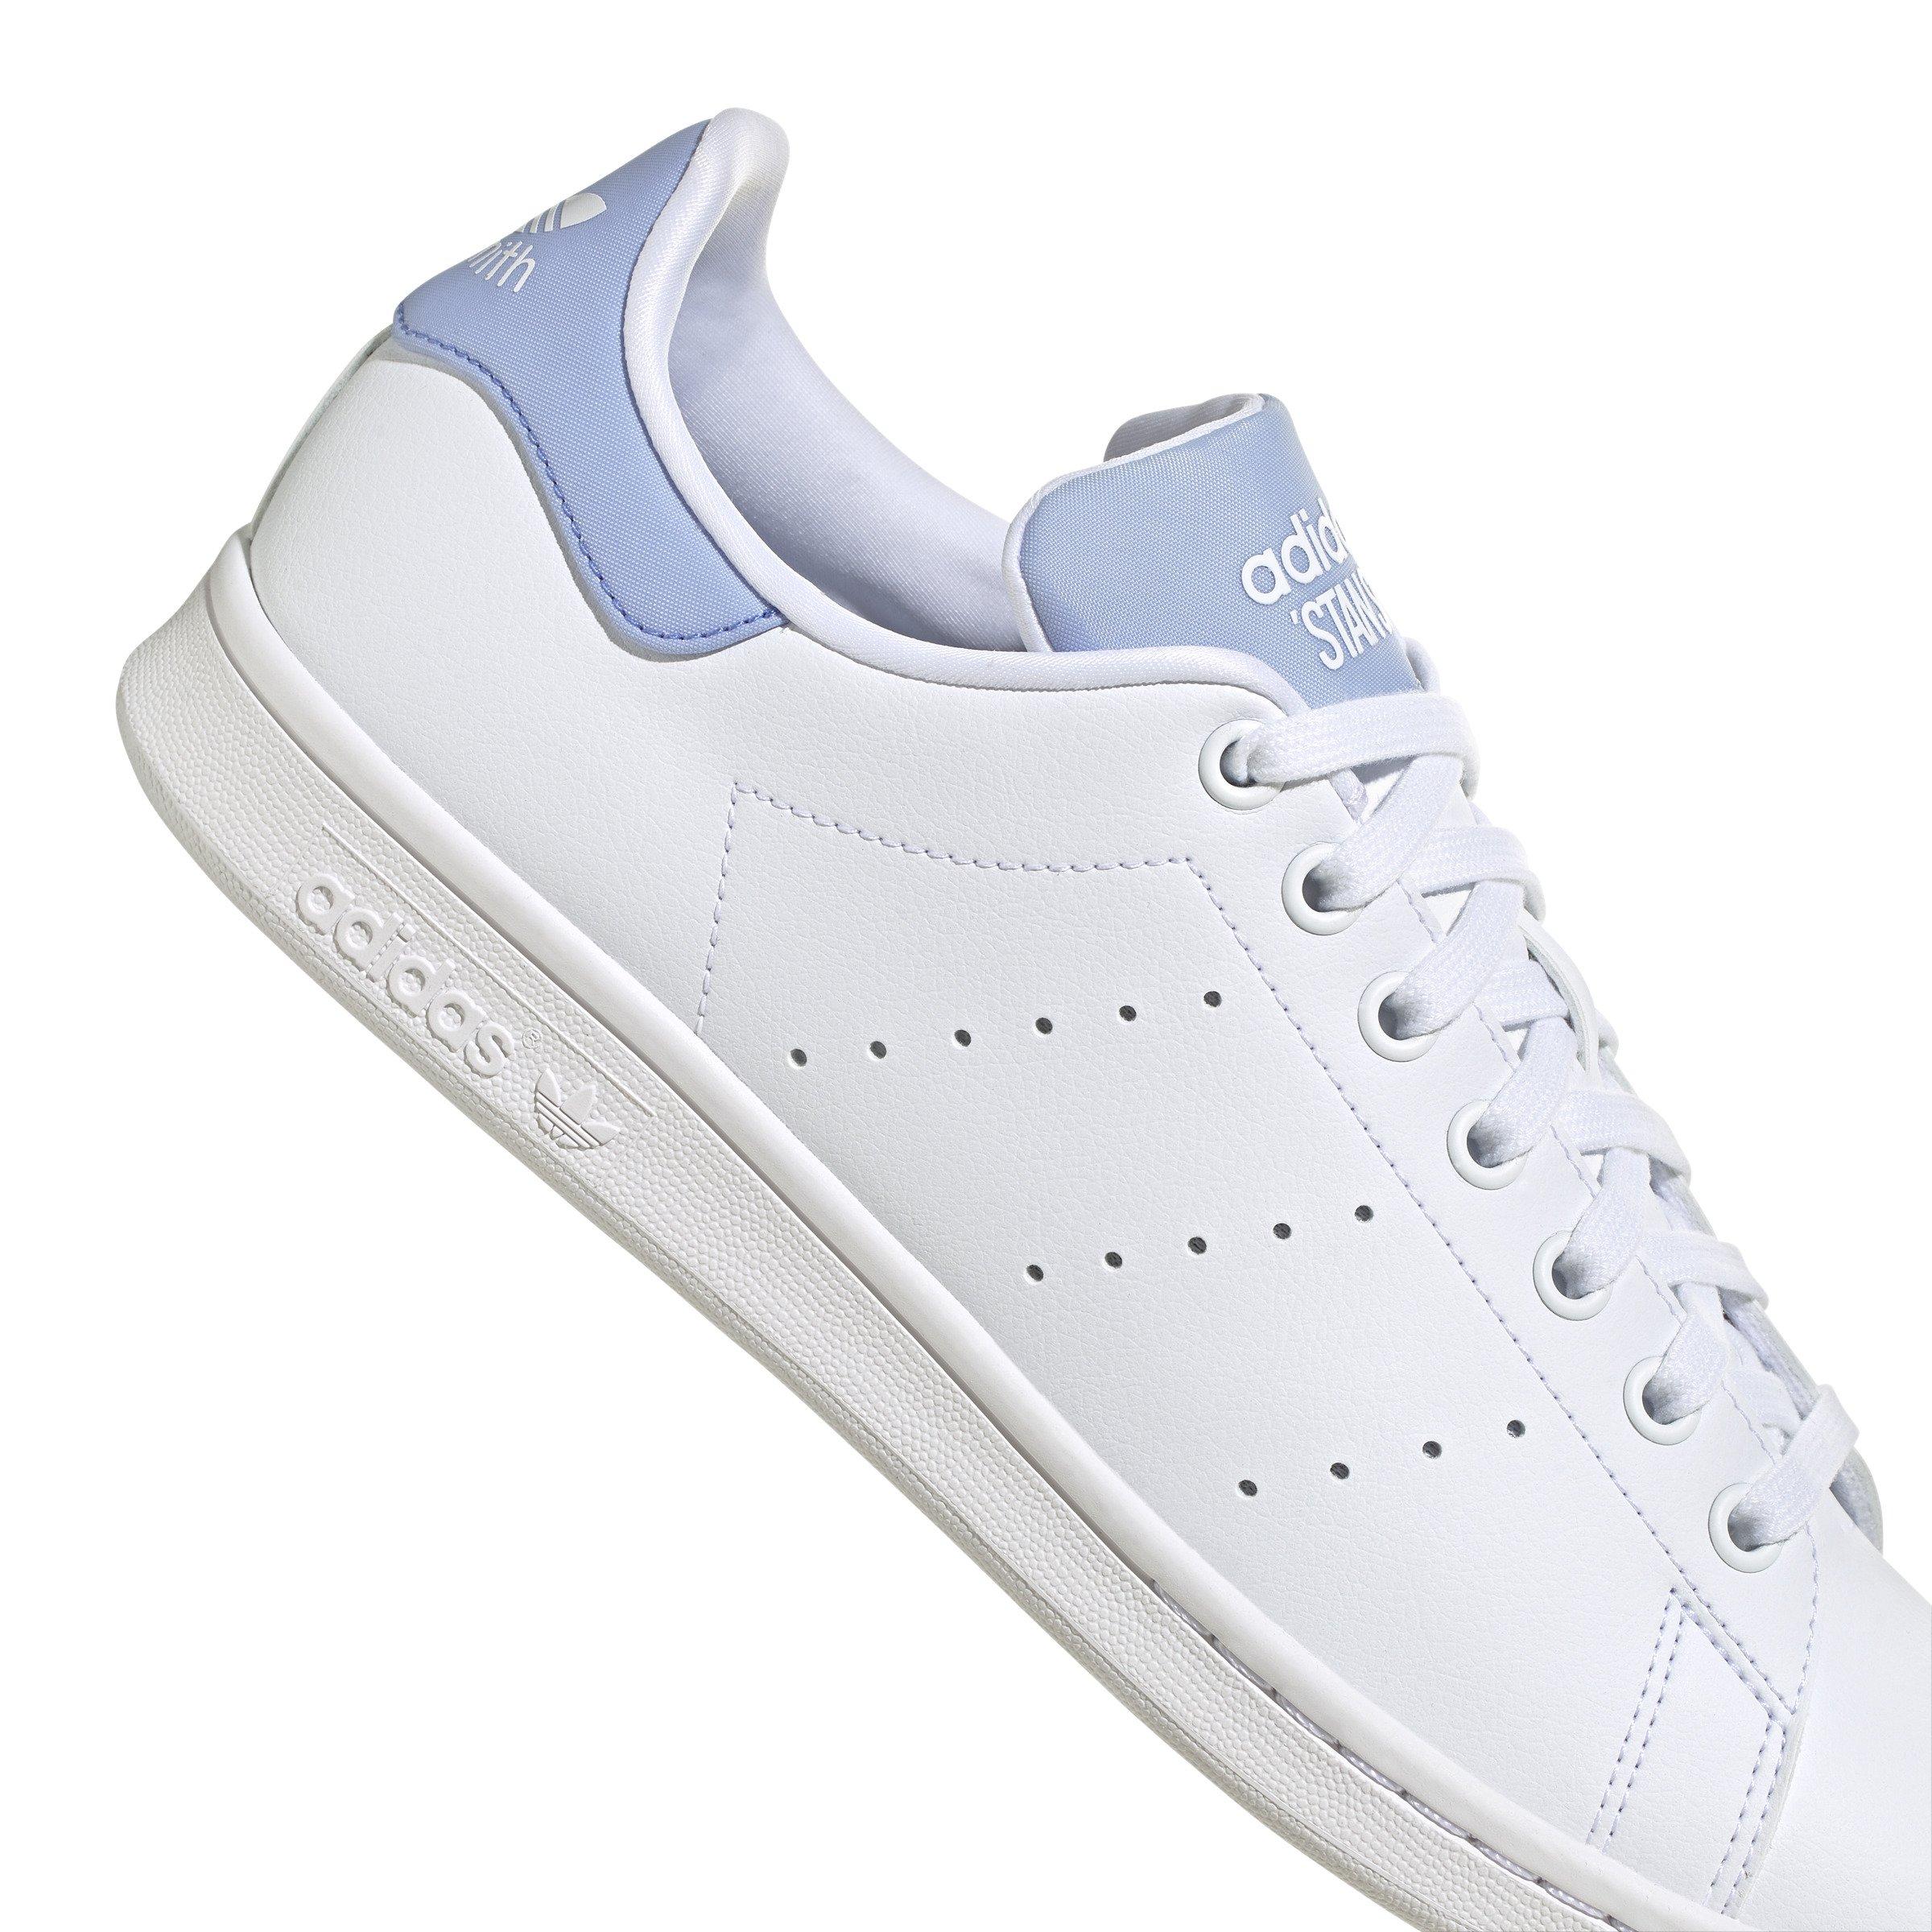 adidas Originals Stan White/Blue Hibbett Shoe - Grade City Boys\' Smith White/Ftwr Dawn\